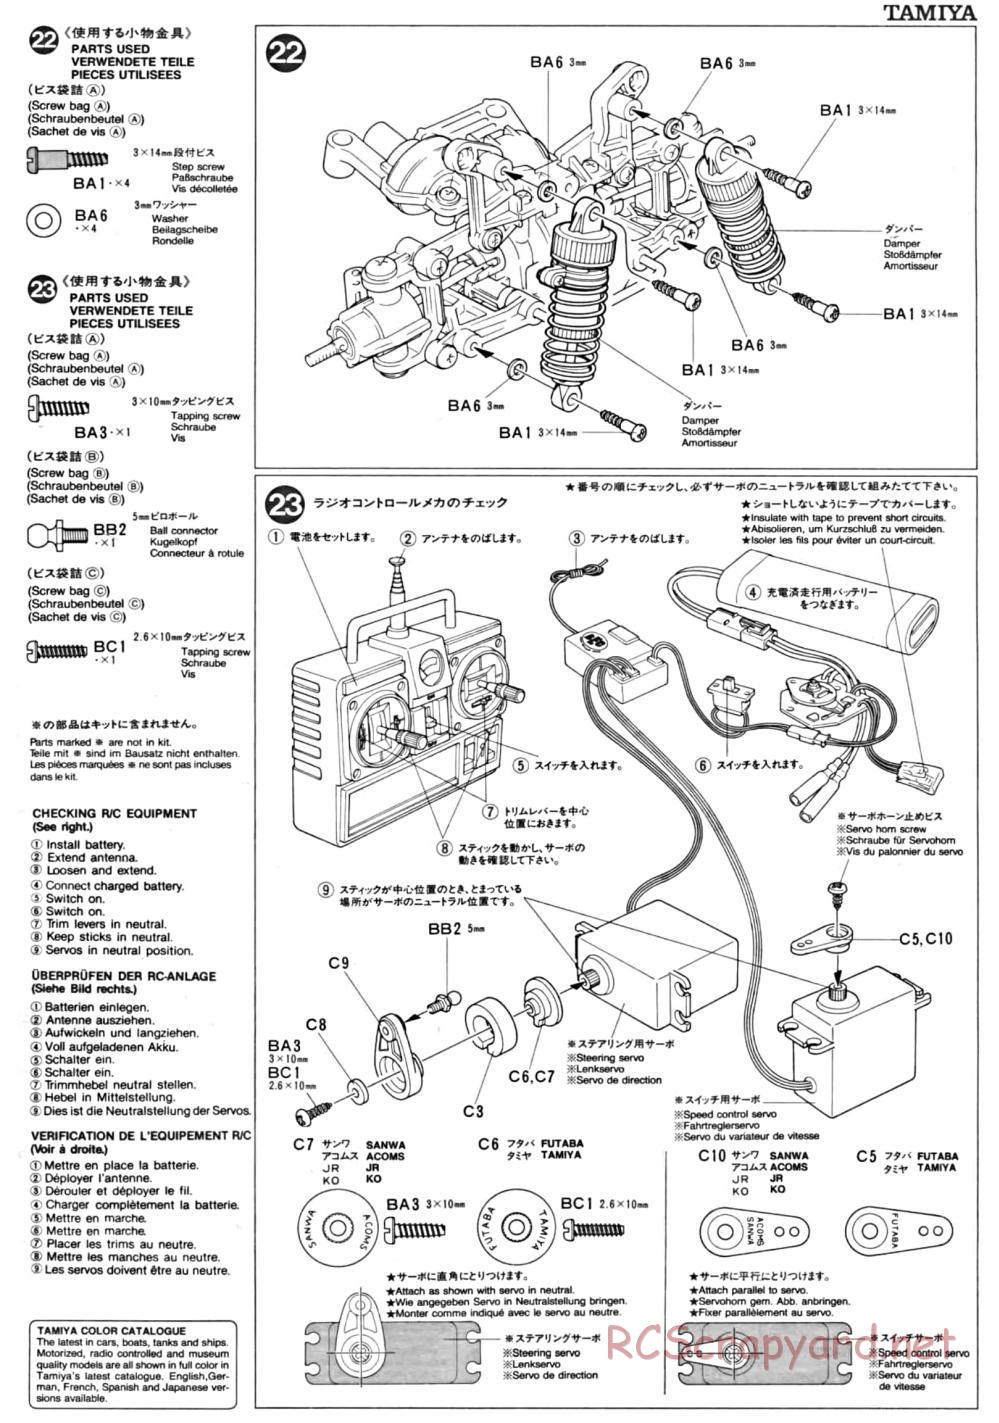 Tamiya - TA-01 Chassis - Manual - Page 8